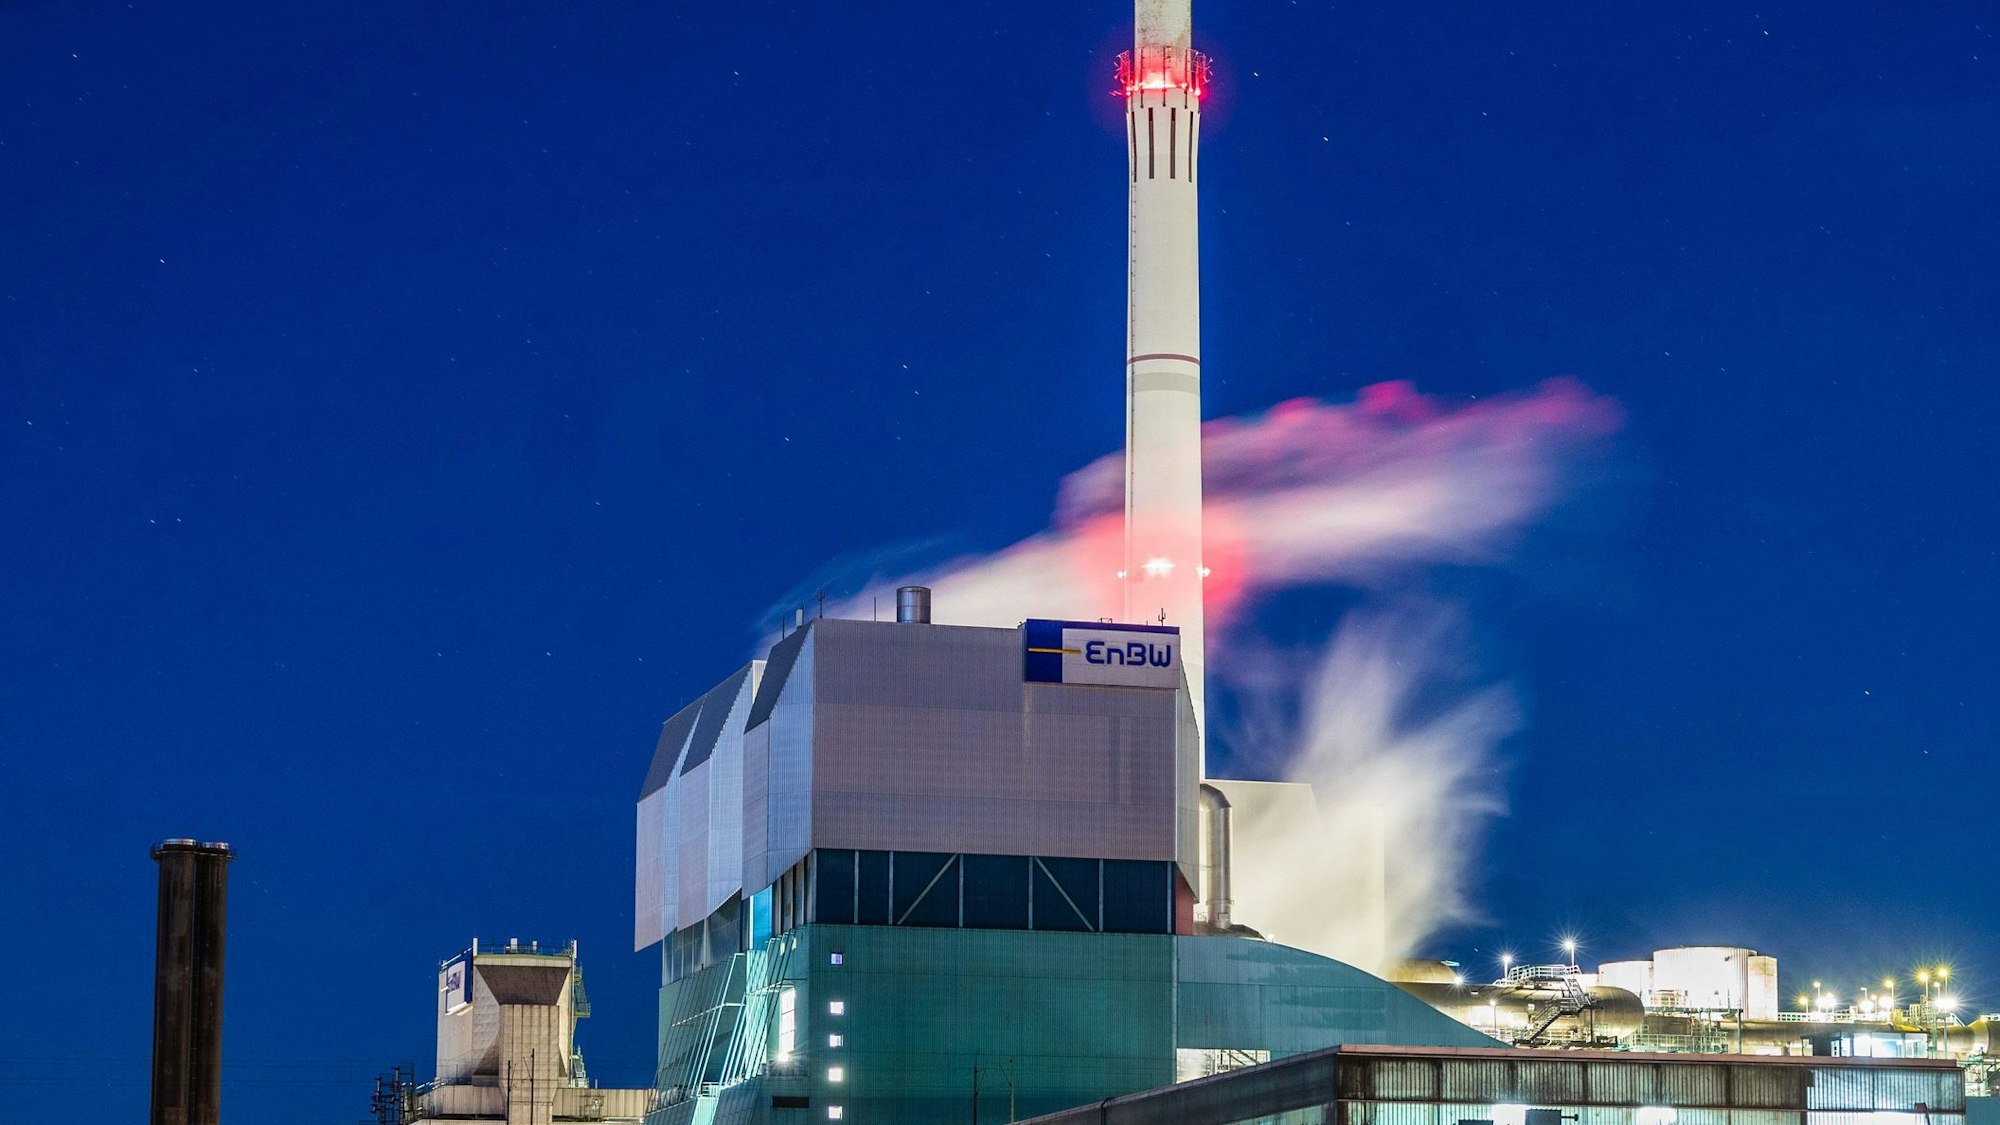 Dampf kommt zur morgendlichen blauen Stunde aus den Schornsteinen des Kraftwerks in Stuttgart-Münster.